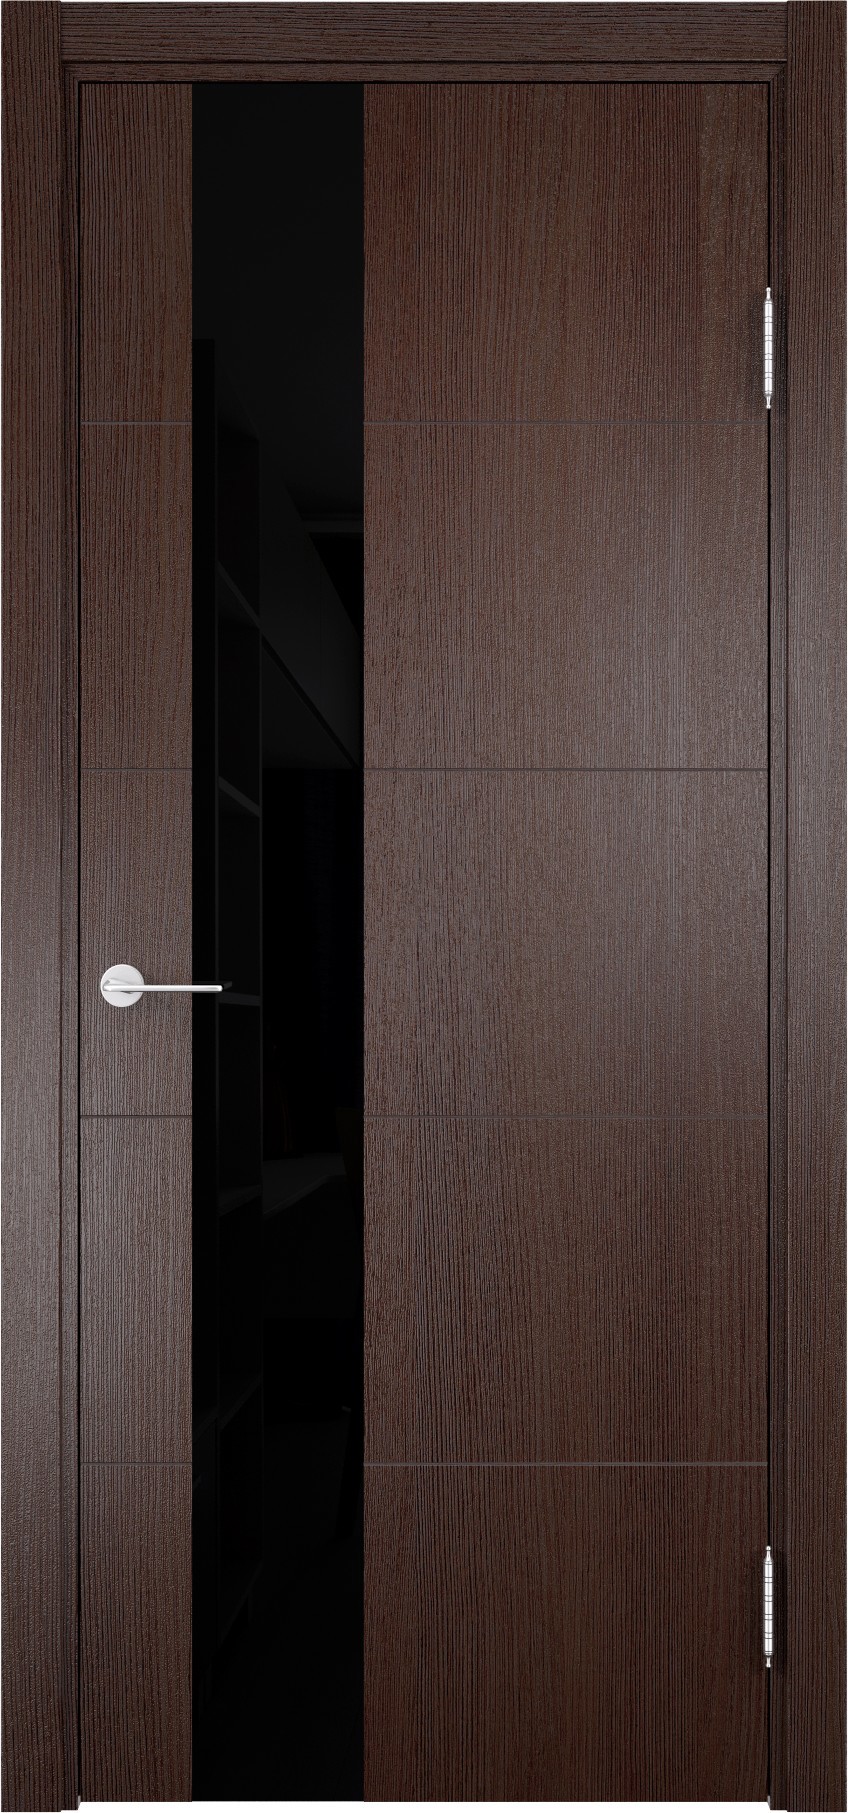 93718177 Дверь межкомнатная Турин (13) остекленная полипропилен цвет дуб графит вералинга 200 x 70 см STLM-0554451 CASAPORTE